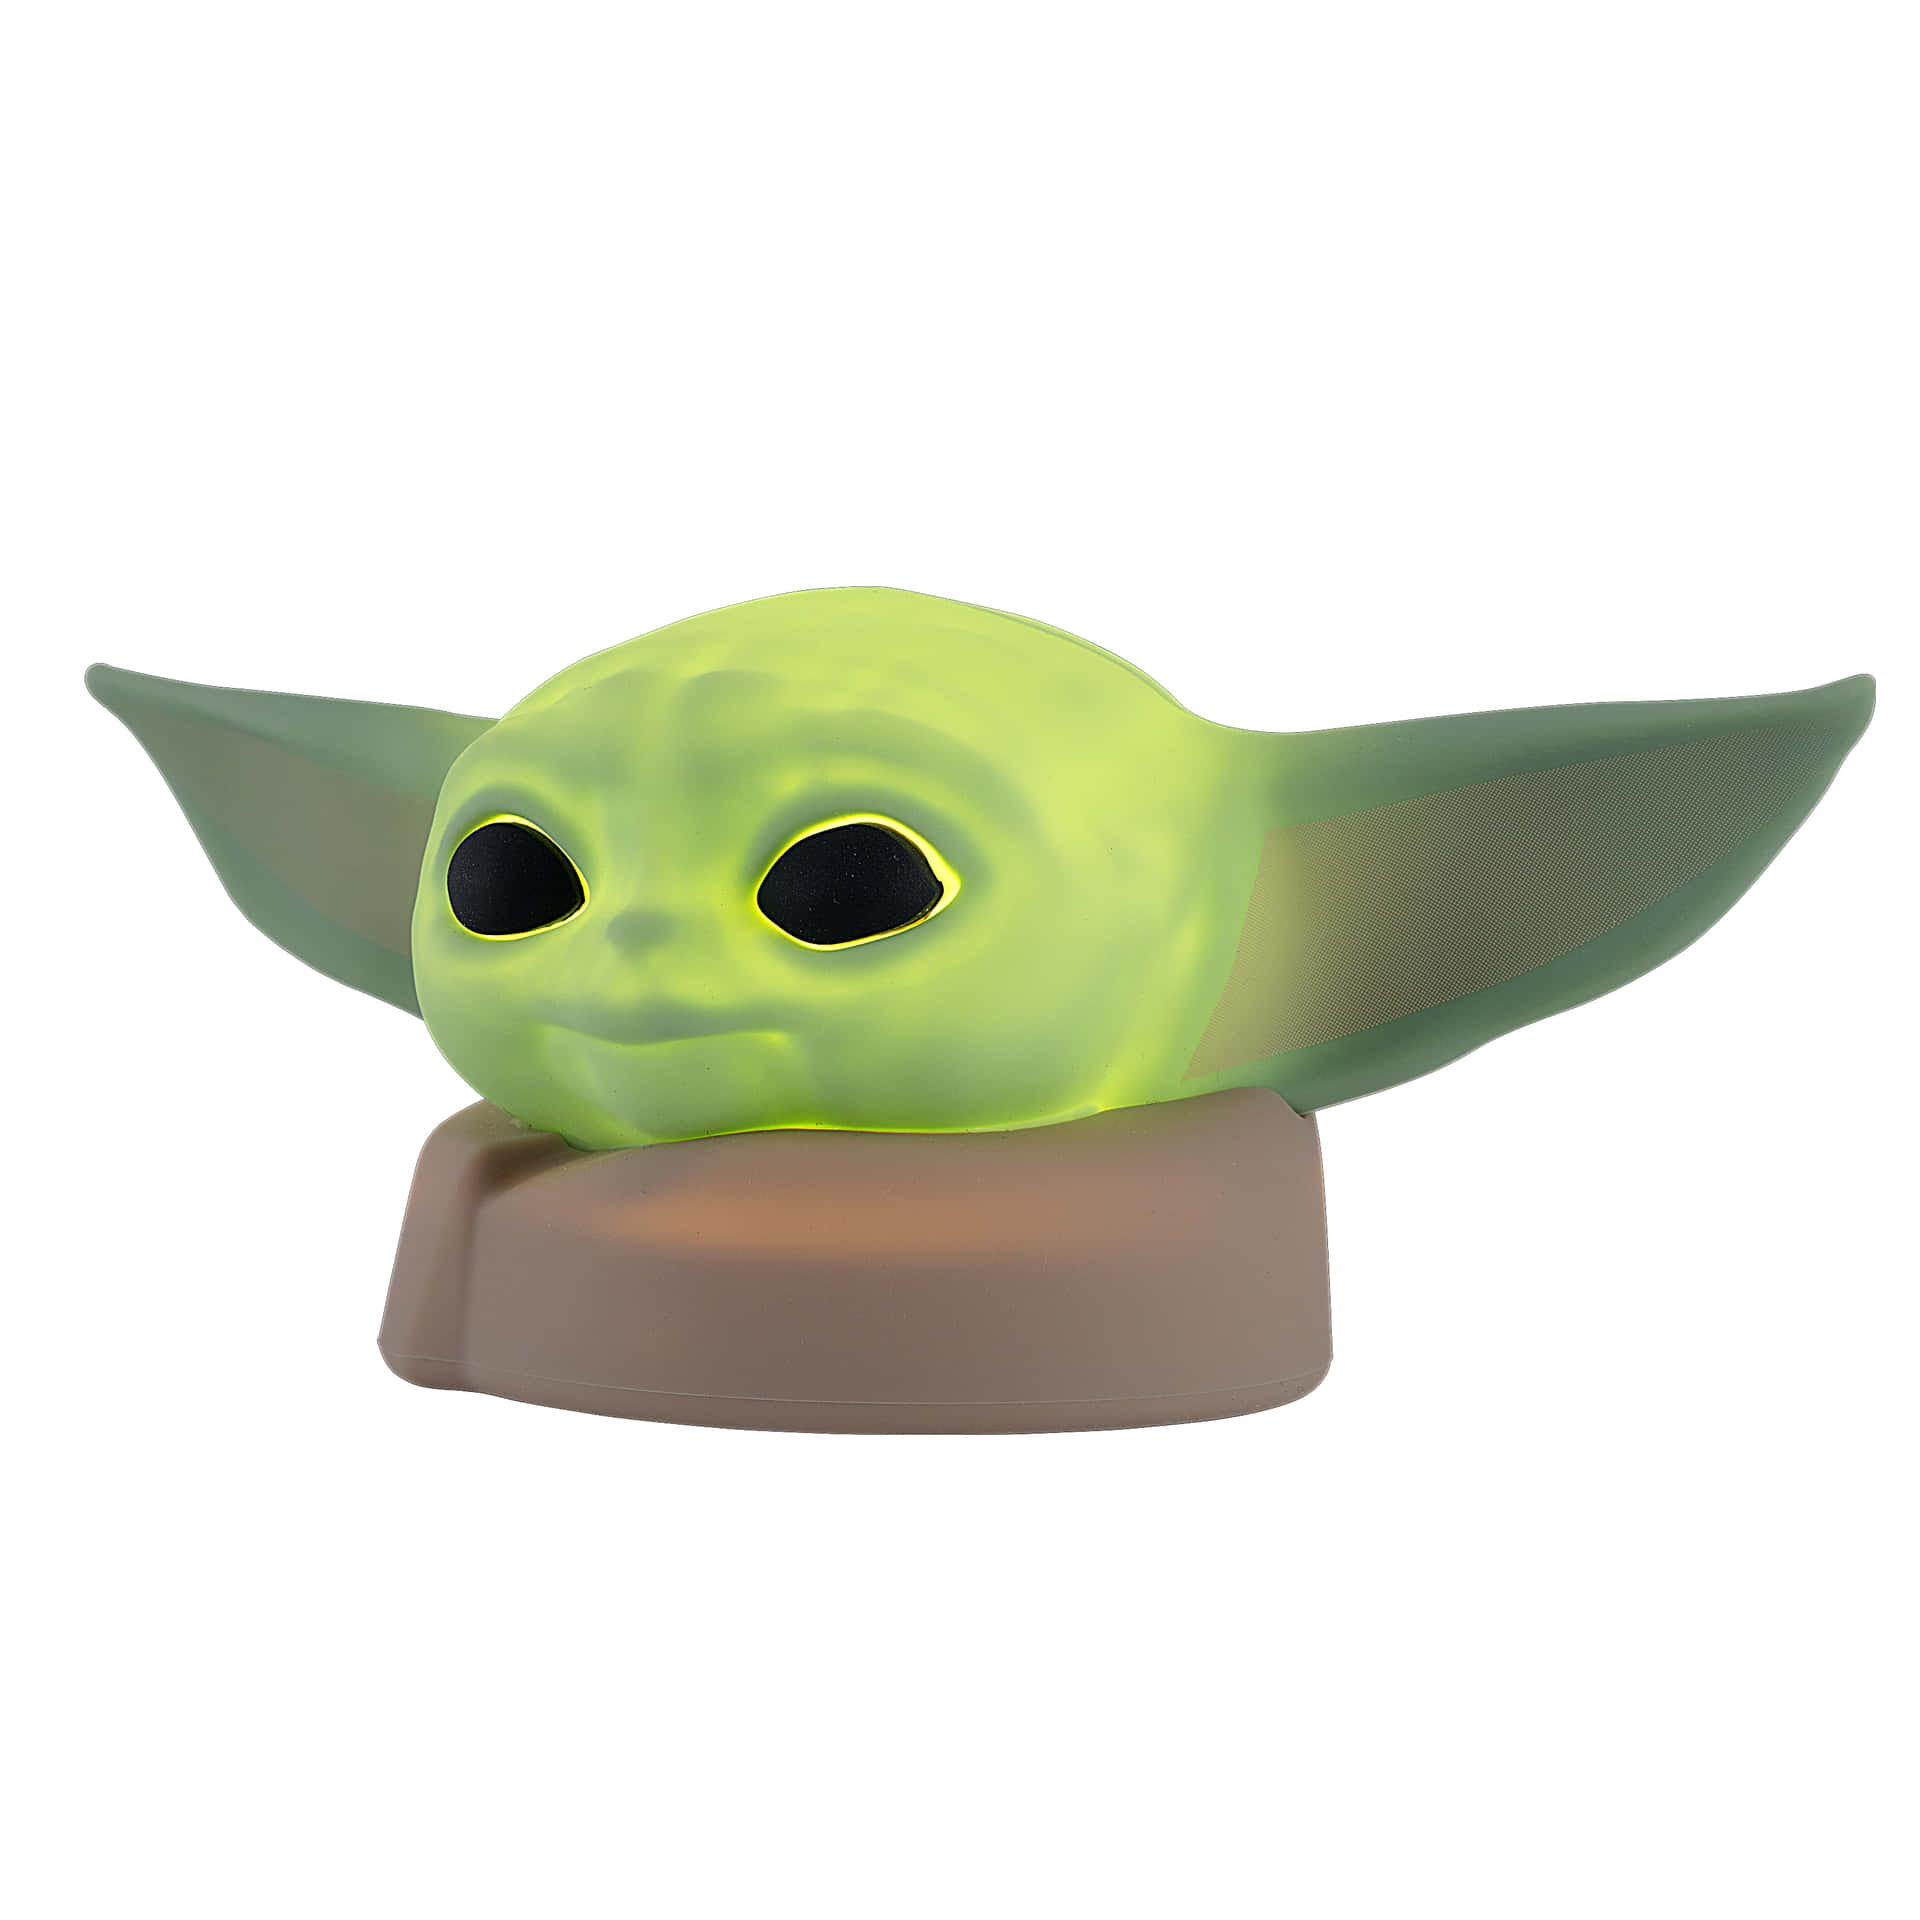 Adorabileimmagine Trasparente Di Baby Yoda